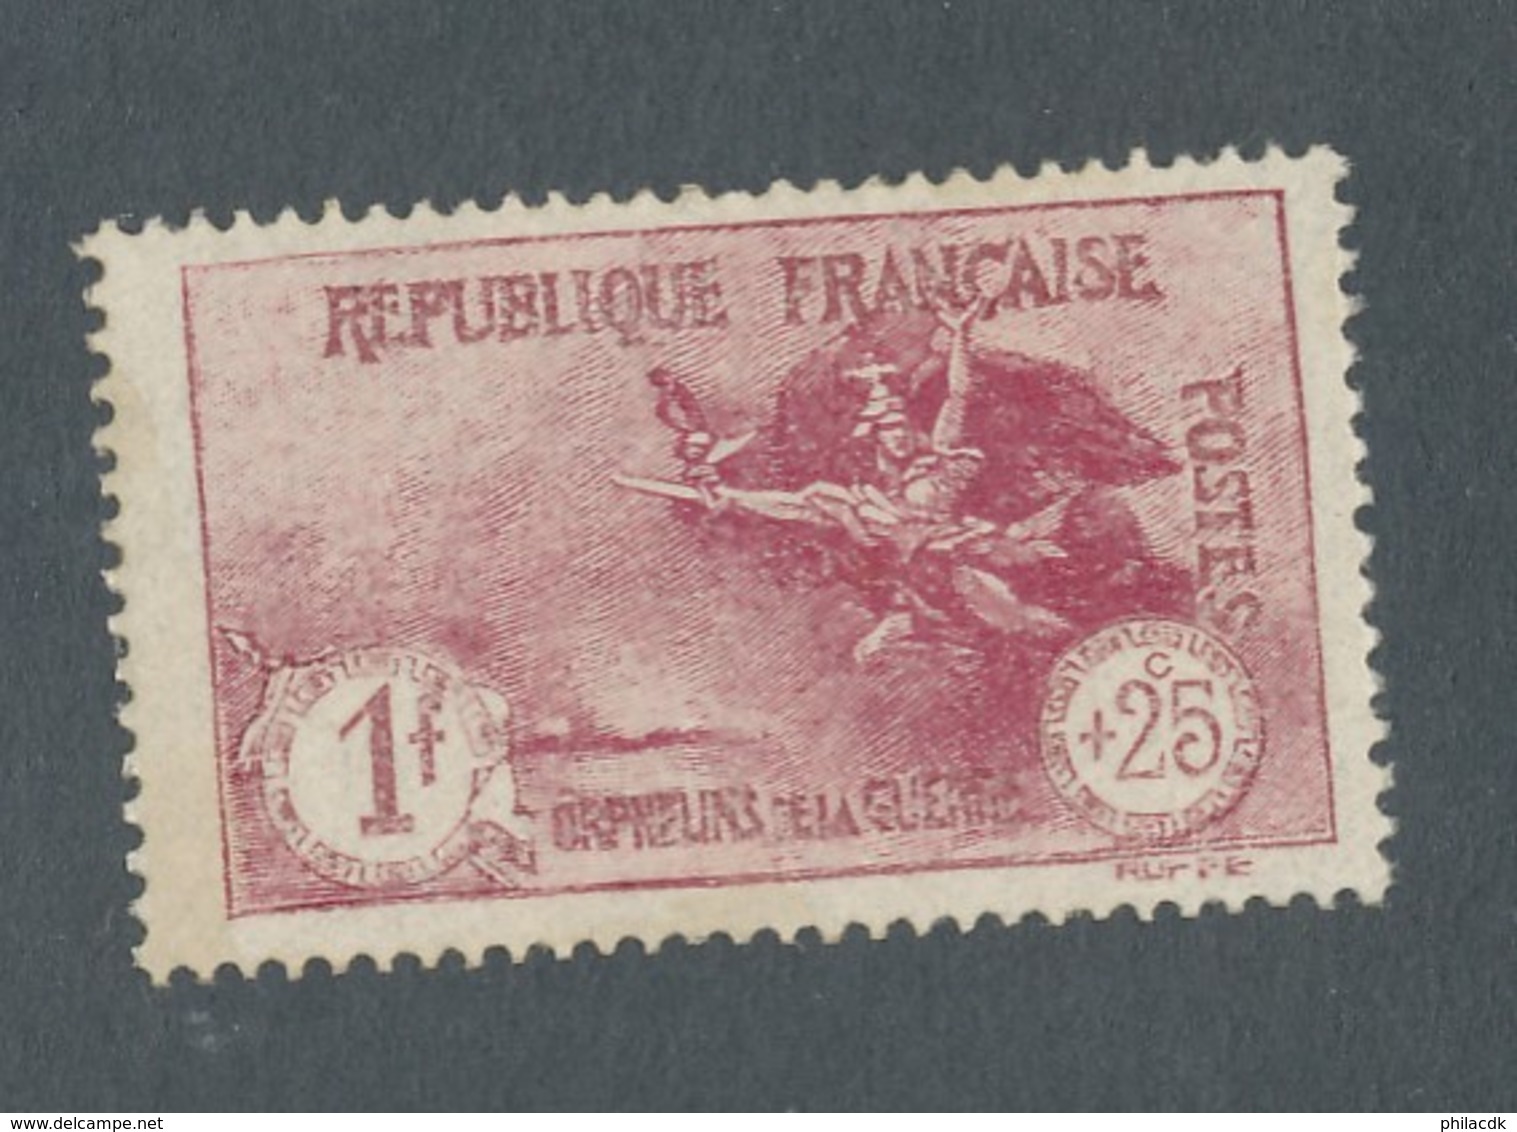 FRANCE - N°YT 231 NEUF** SANS CHARNIERE AVEC GOMME NON ORIGINALE (GNO) - 1926/27 - COTE YT : 63€ - Neufs